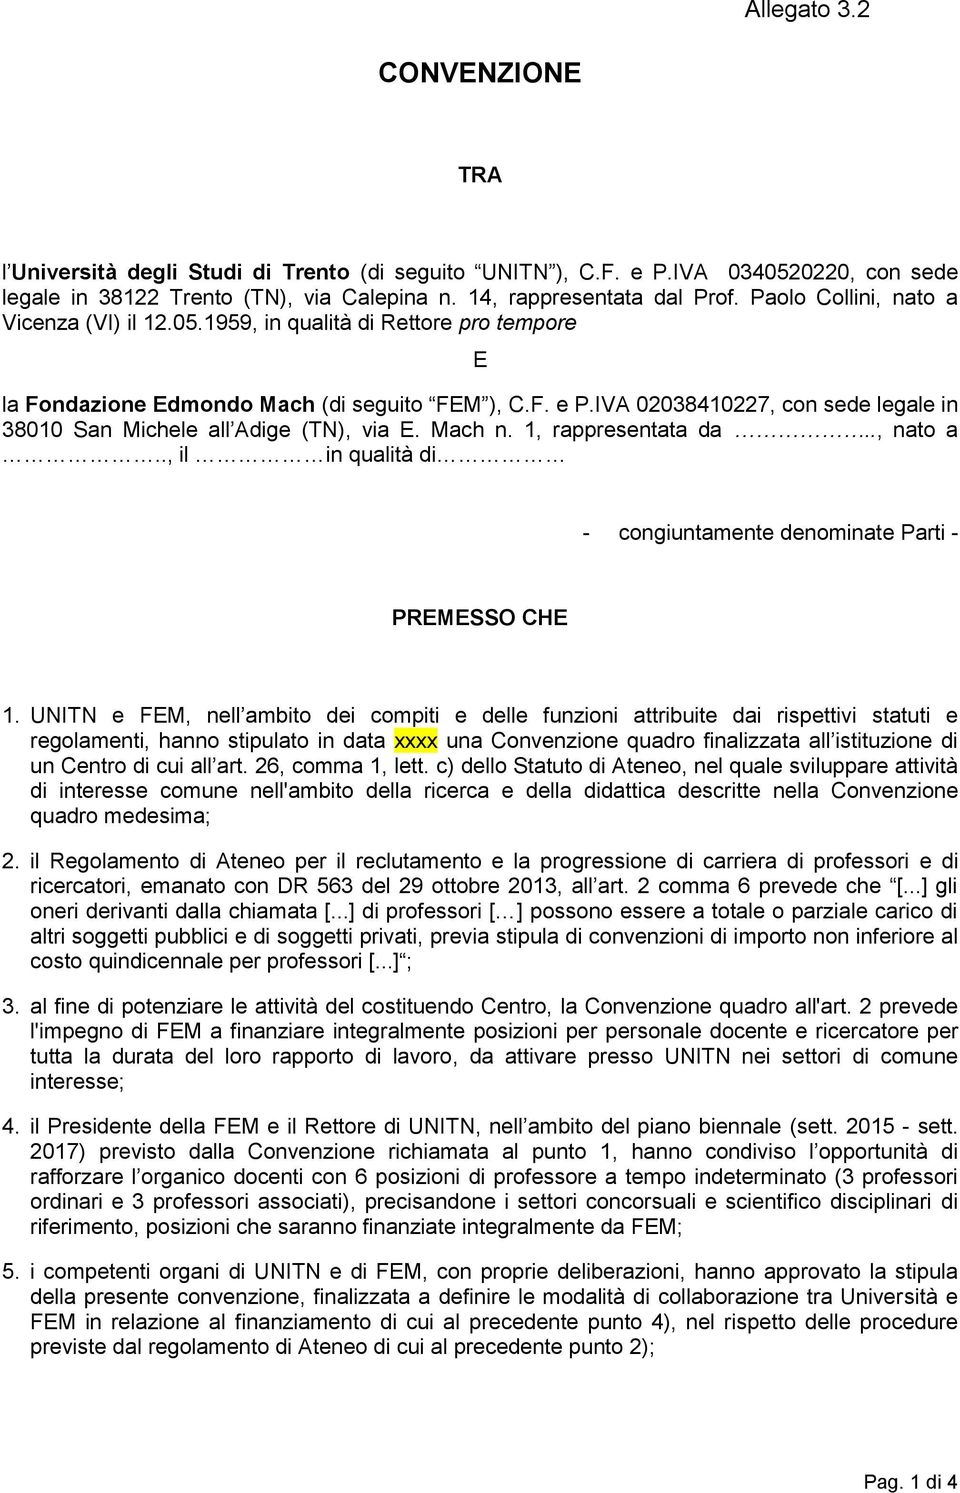 IVA 02038410227, con sede legale in 38010 San Michele all Adige (TN), via E. Mach n. 1, rappresentata da.., nato a.., il in qualità di - congiuntamente denominate Parti - PREMESSO CHE 1.